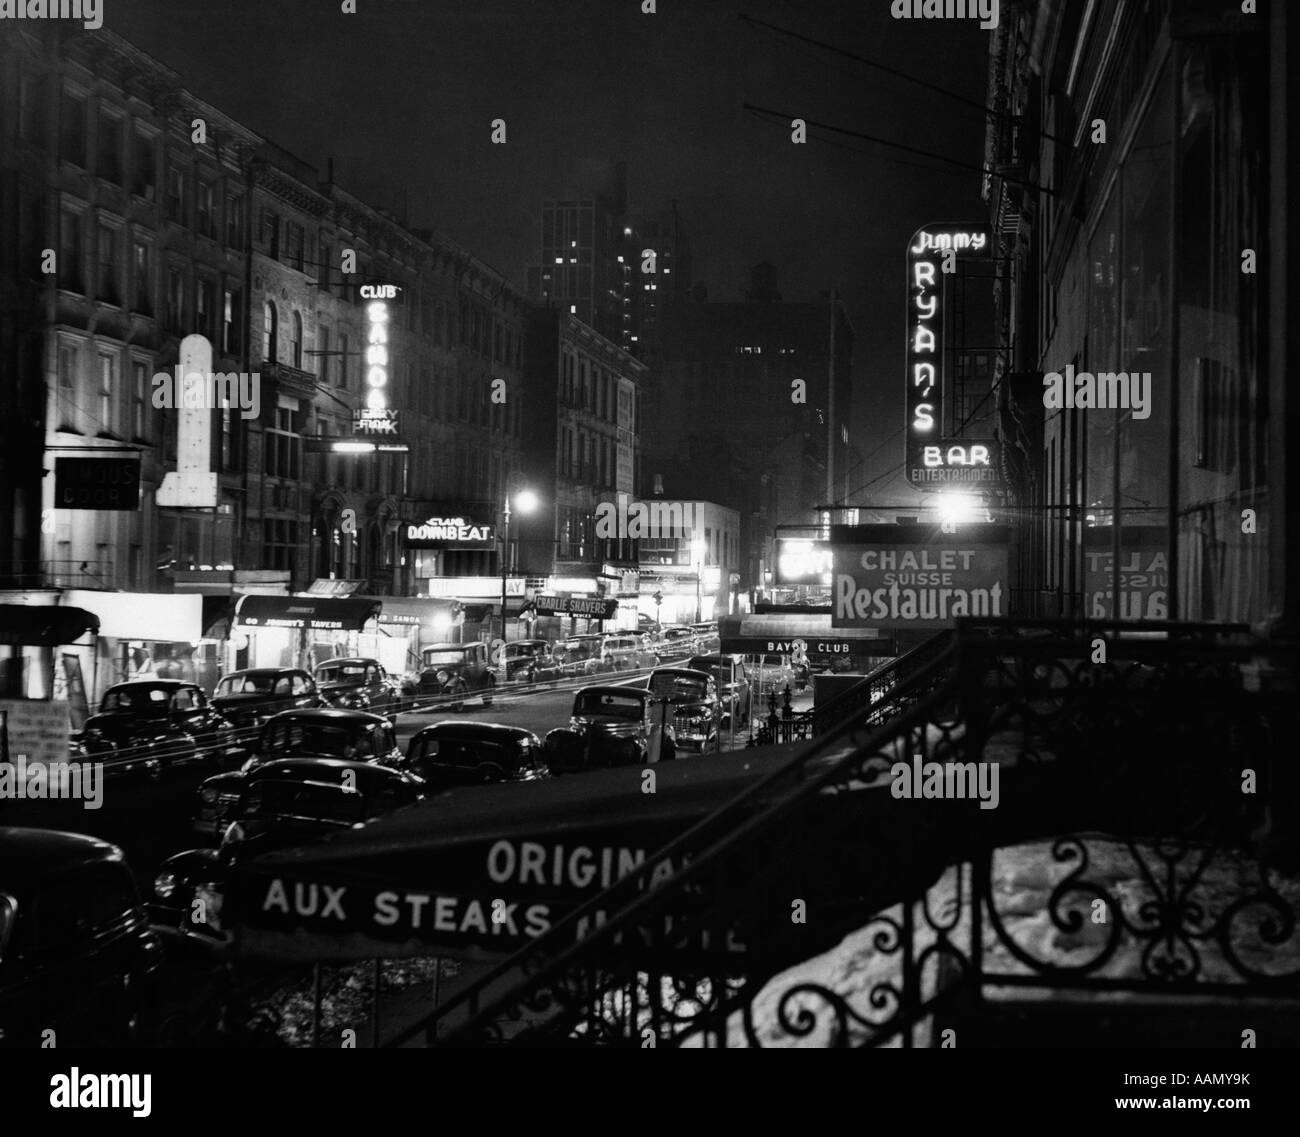 1940s NOTTE SCENA DI STRADA DI NEW YORK CITY West 52nd street lights da numerose discoteche e locali notturni Foto Stock